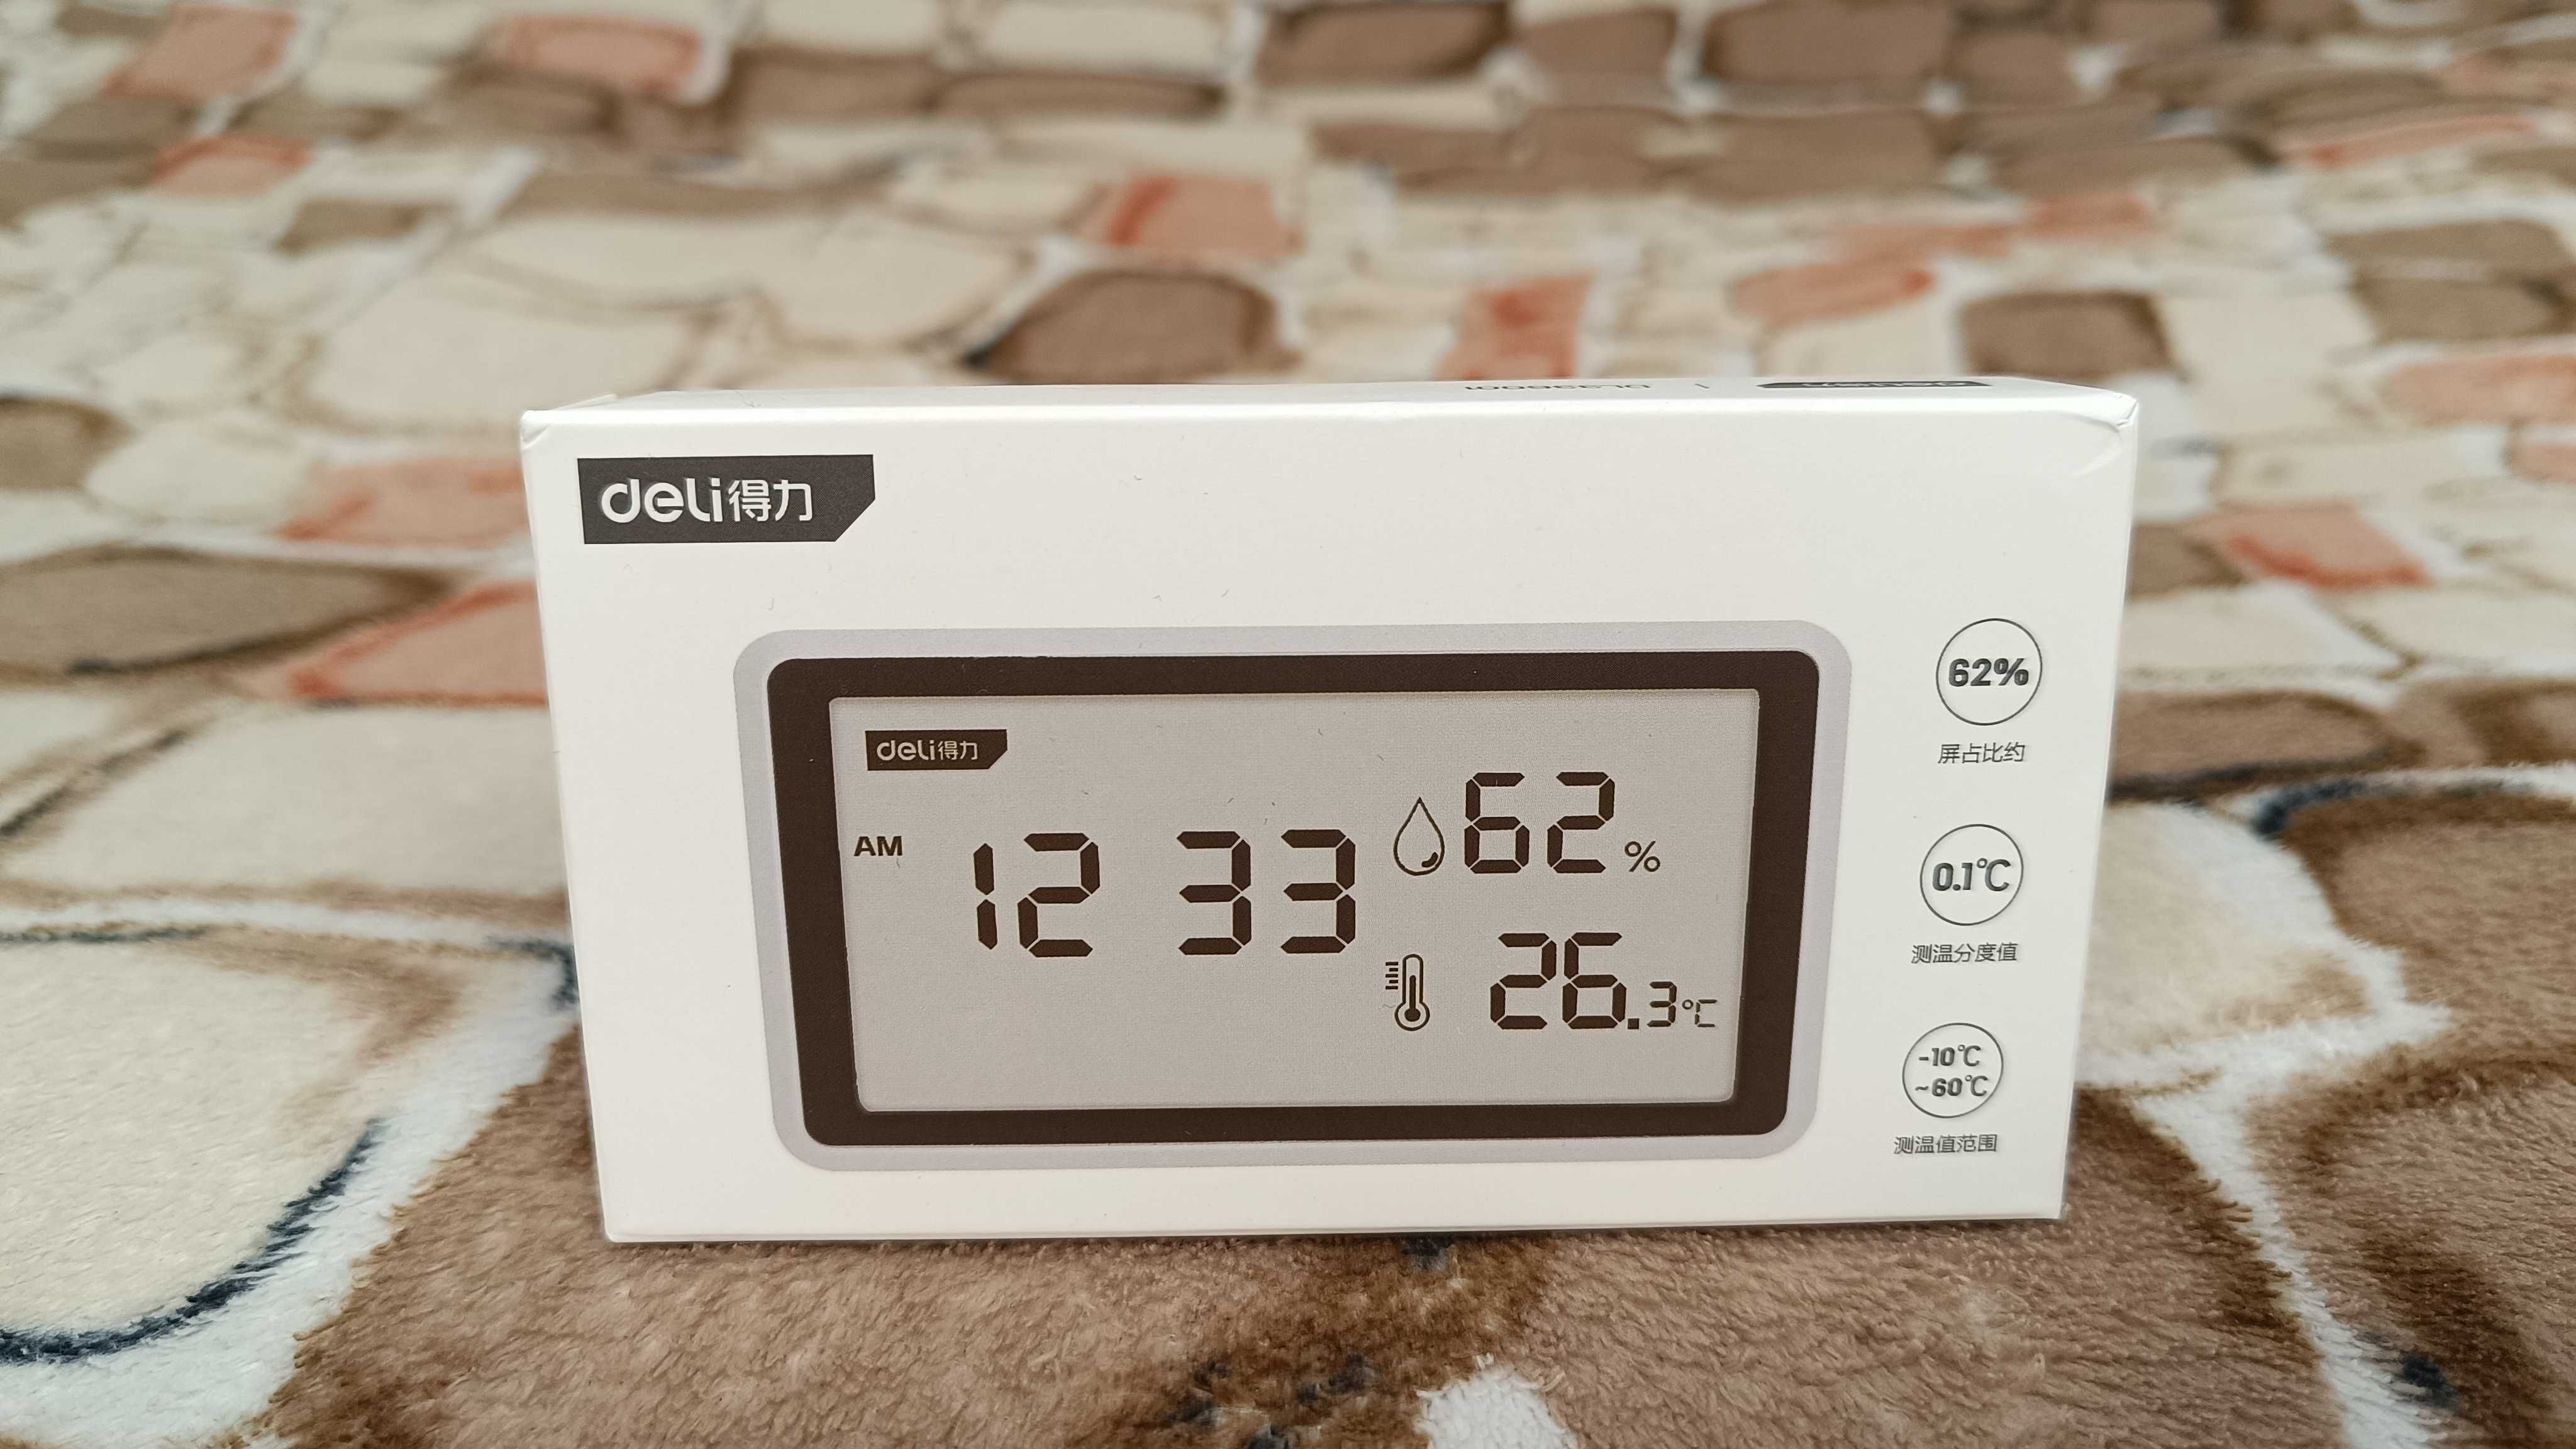 Градусник Xiaomi Deli DL336001 температуры влажности термометр